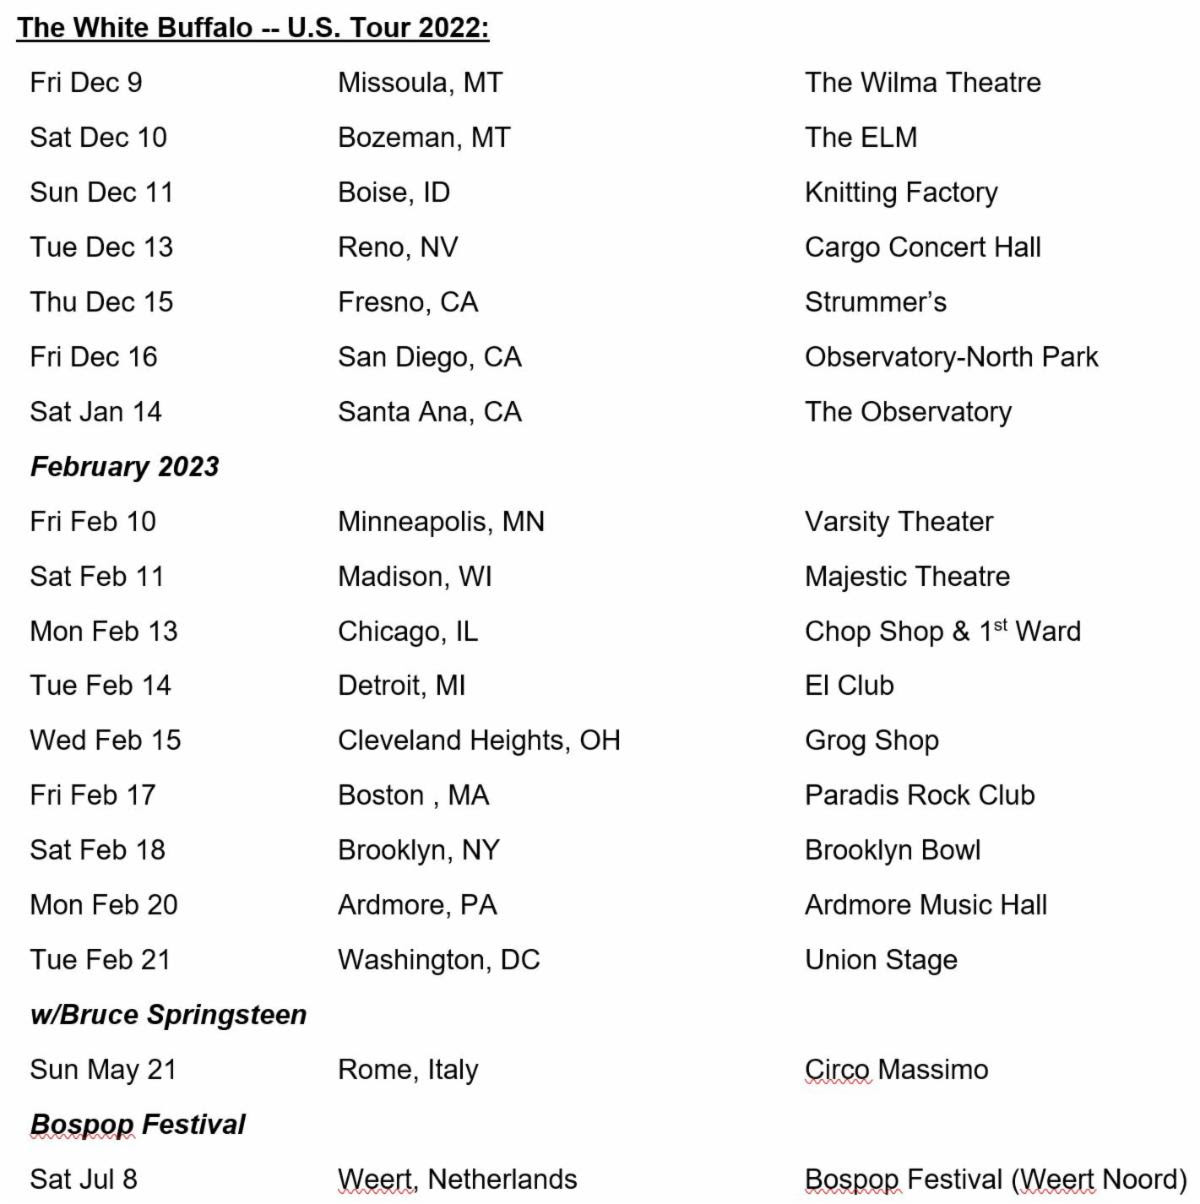 The White Buffalo tour dates